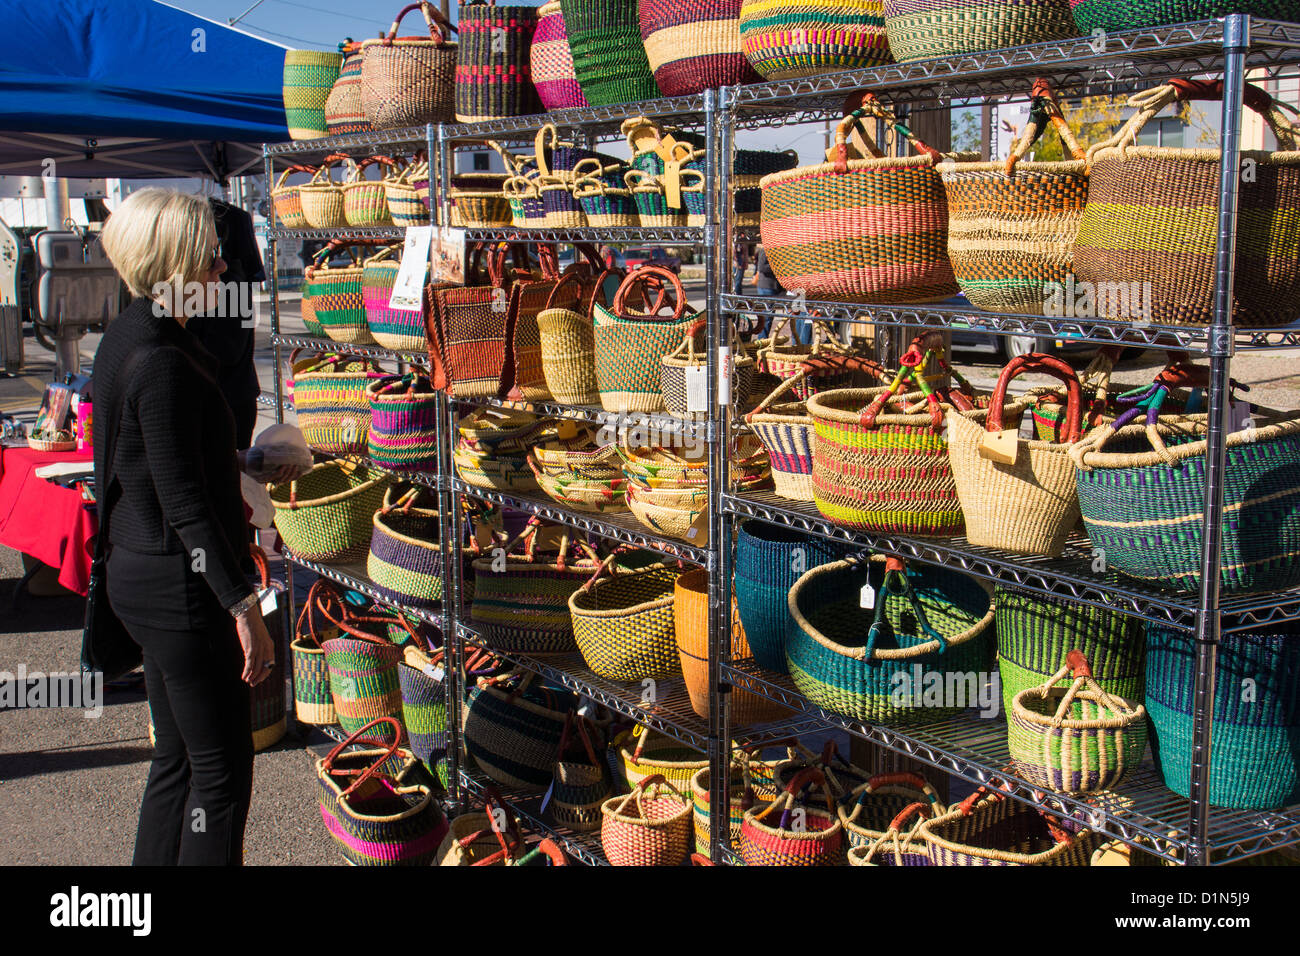 Woman shopping at handmade basket display at Santa Fe, NM farmer's market Stock Photo